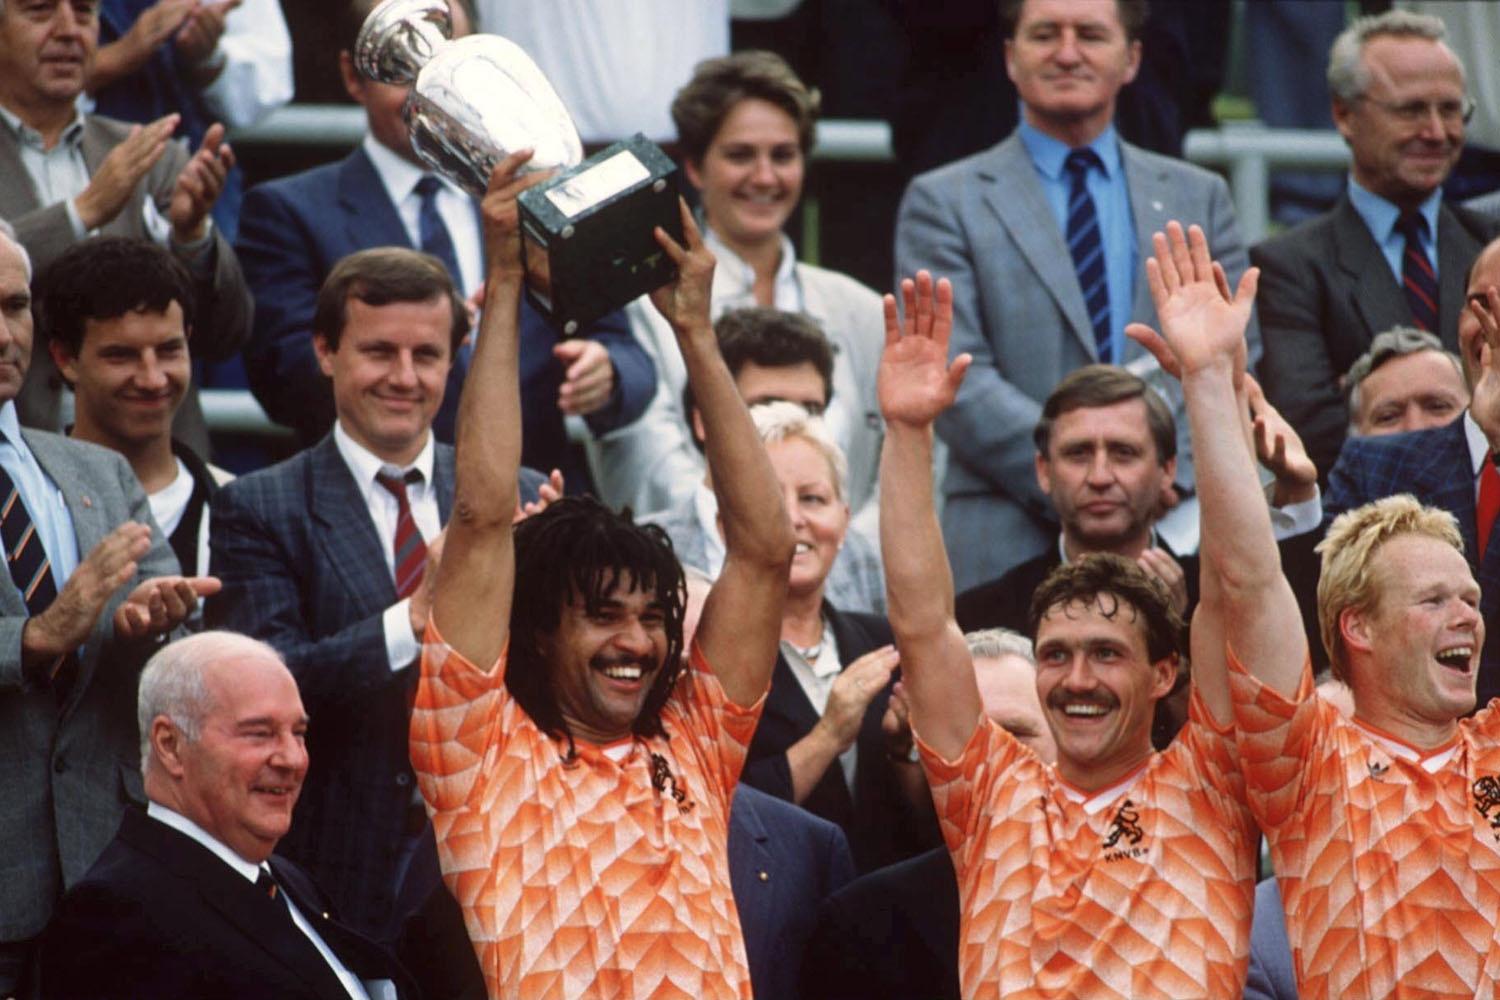 De Europese titel was in 1988 voor Nederland